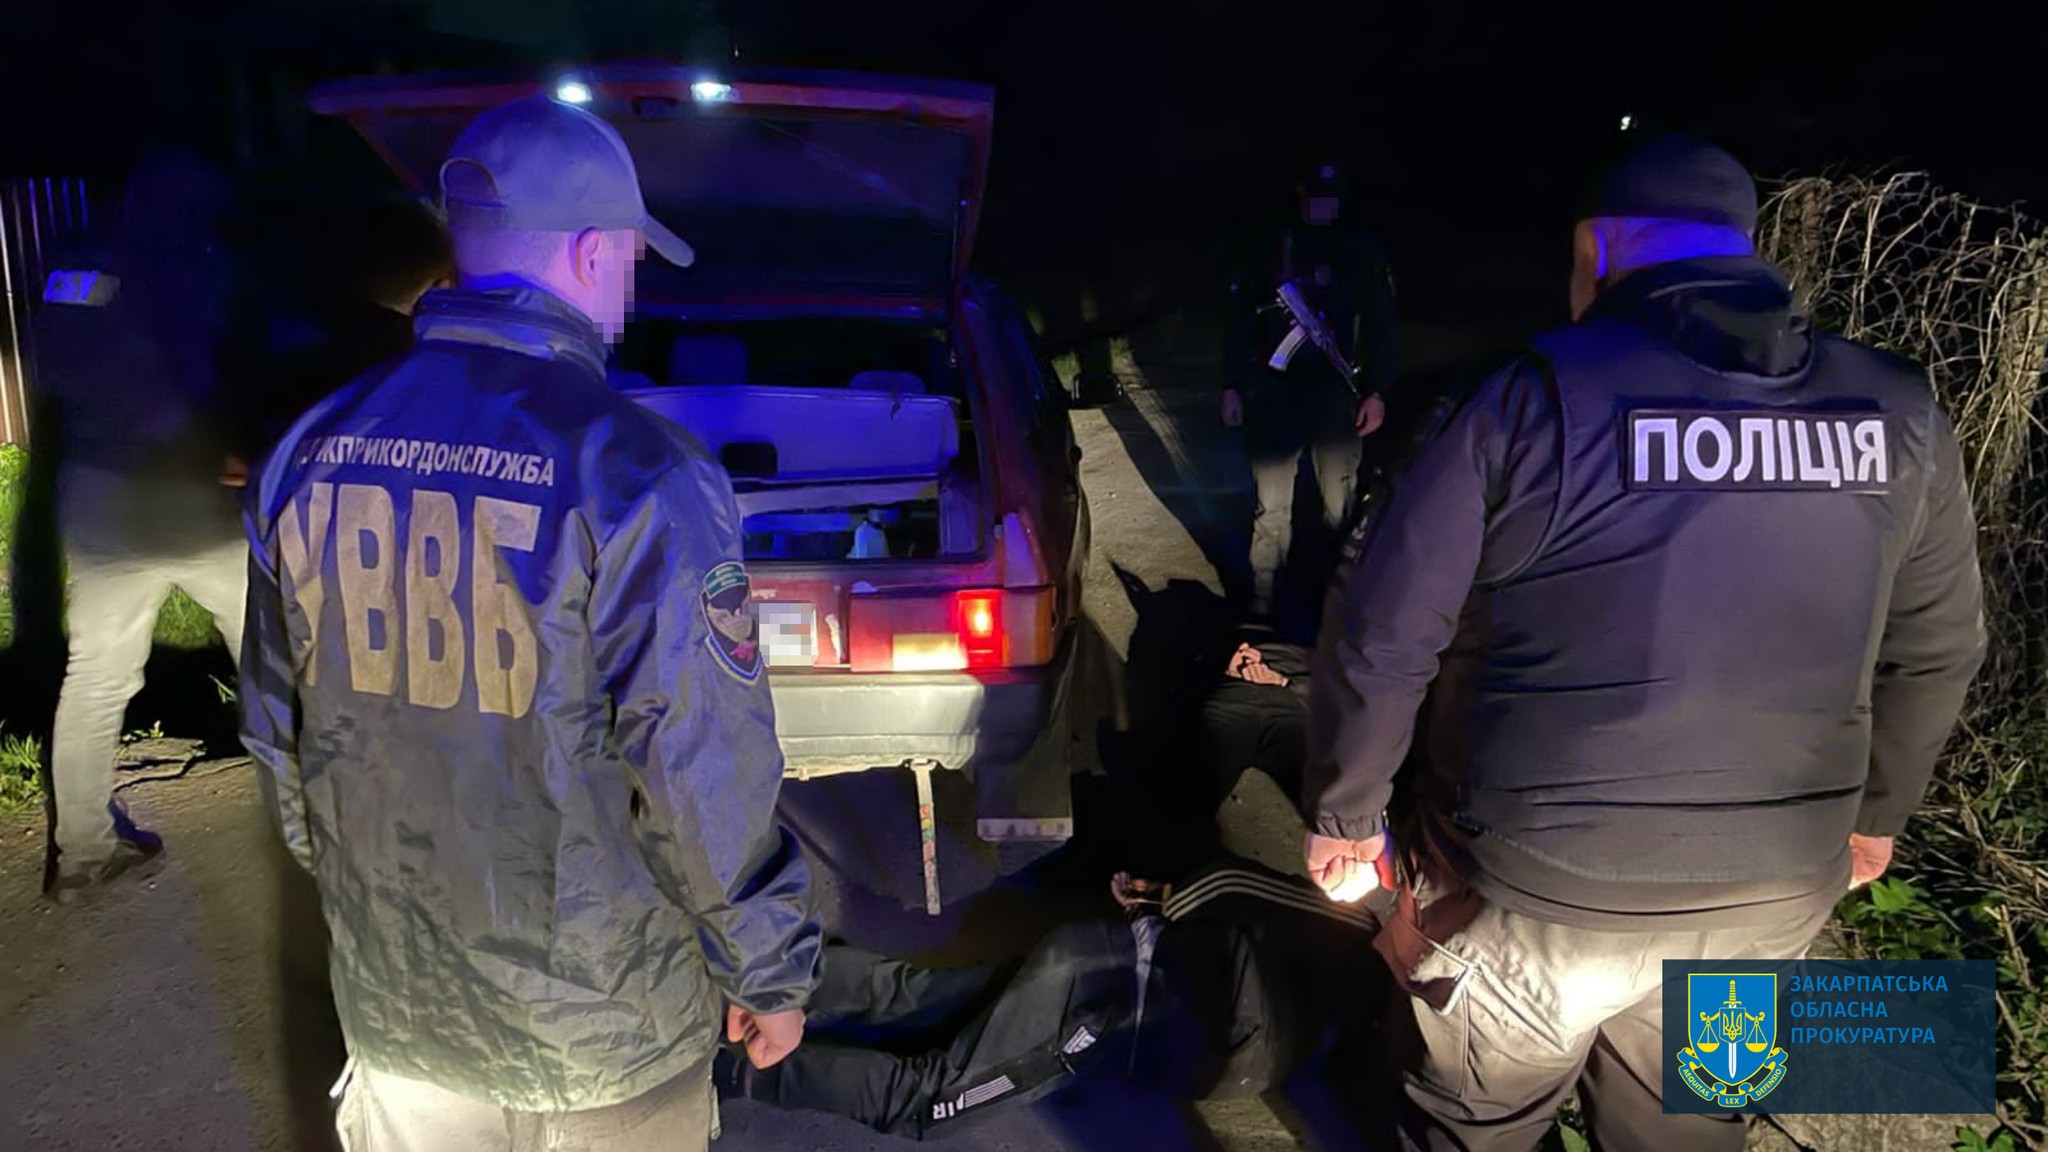 Переброска «уклоняющихся» через границу за 4000 евро – в Раховской области задержали двух местных жителей